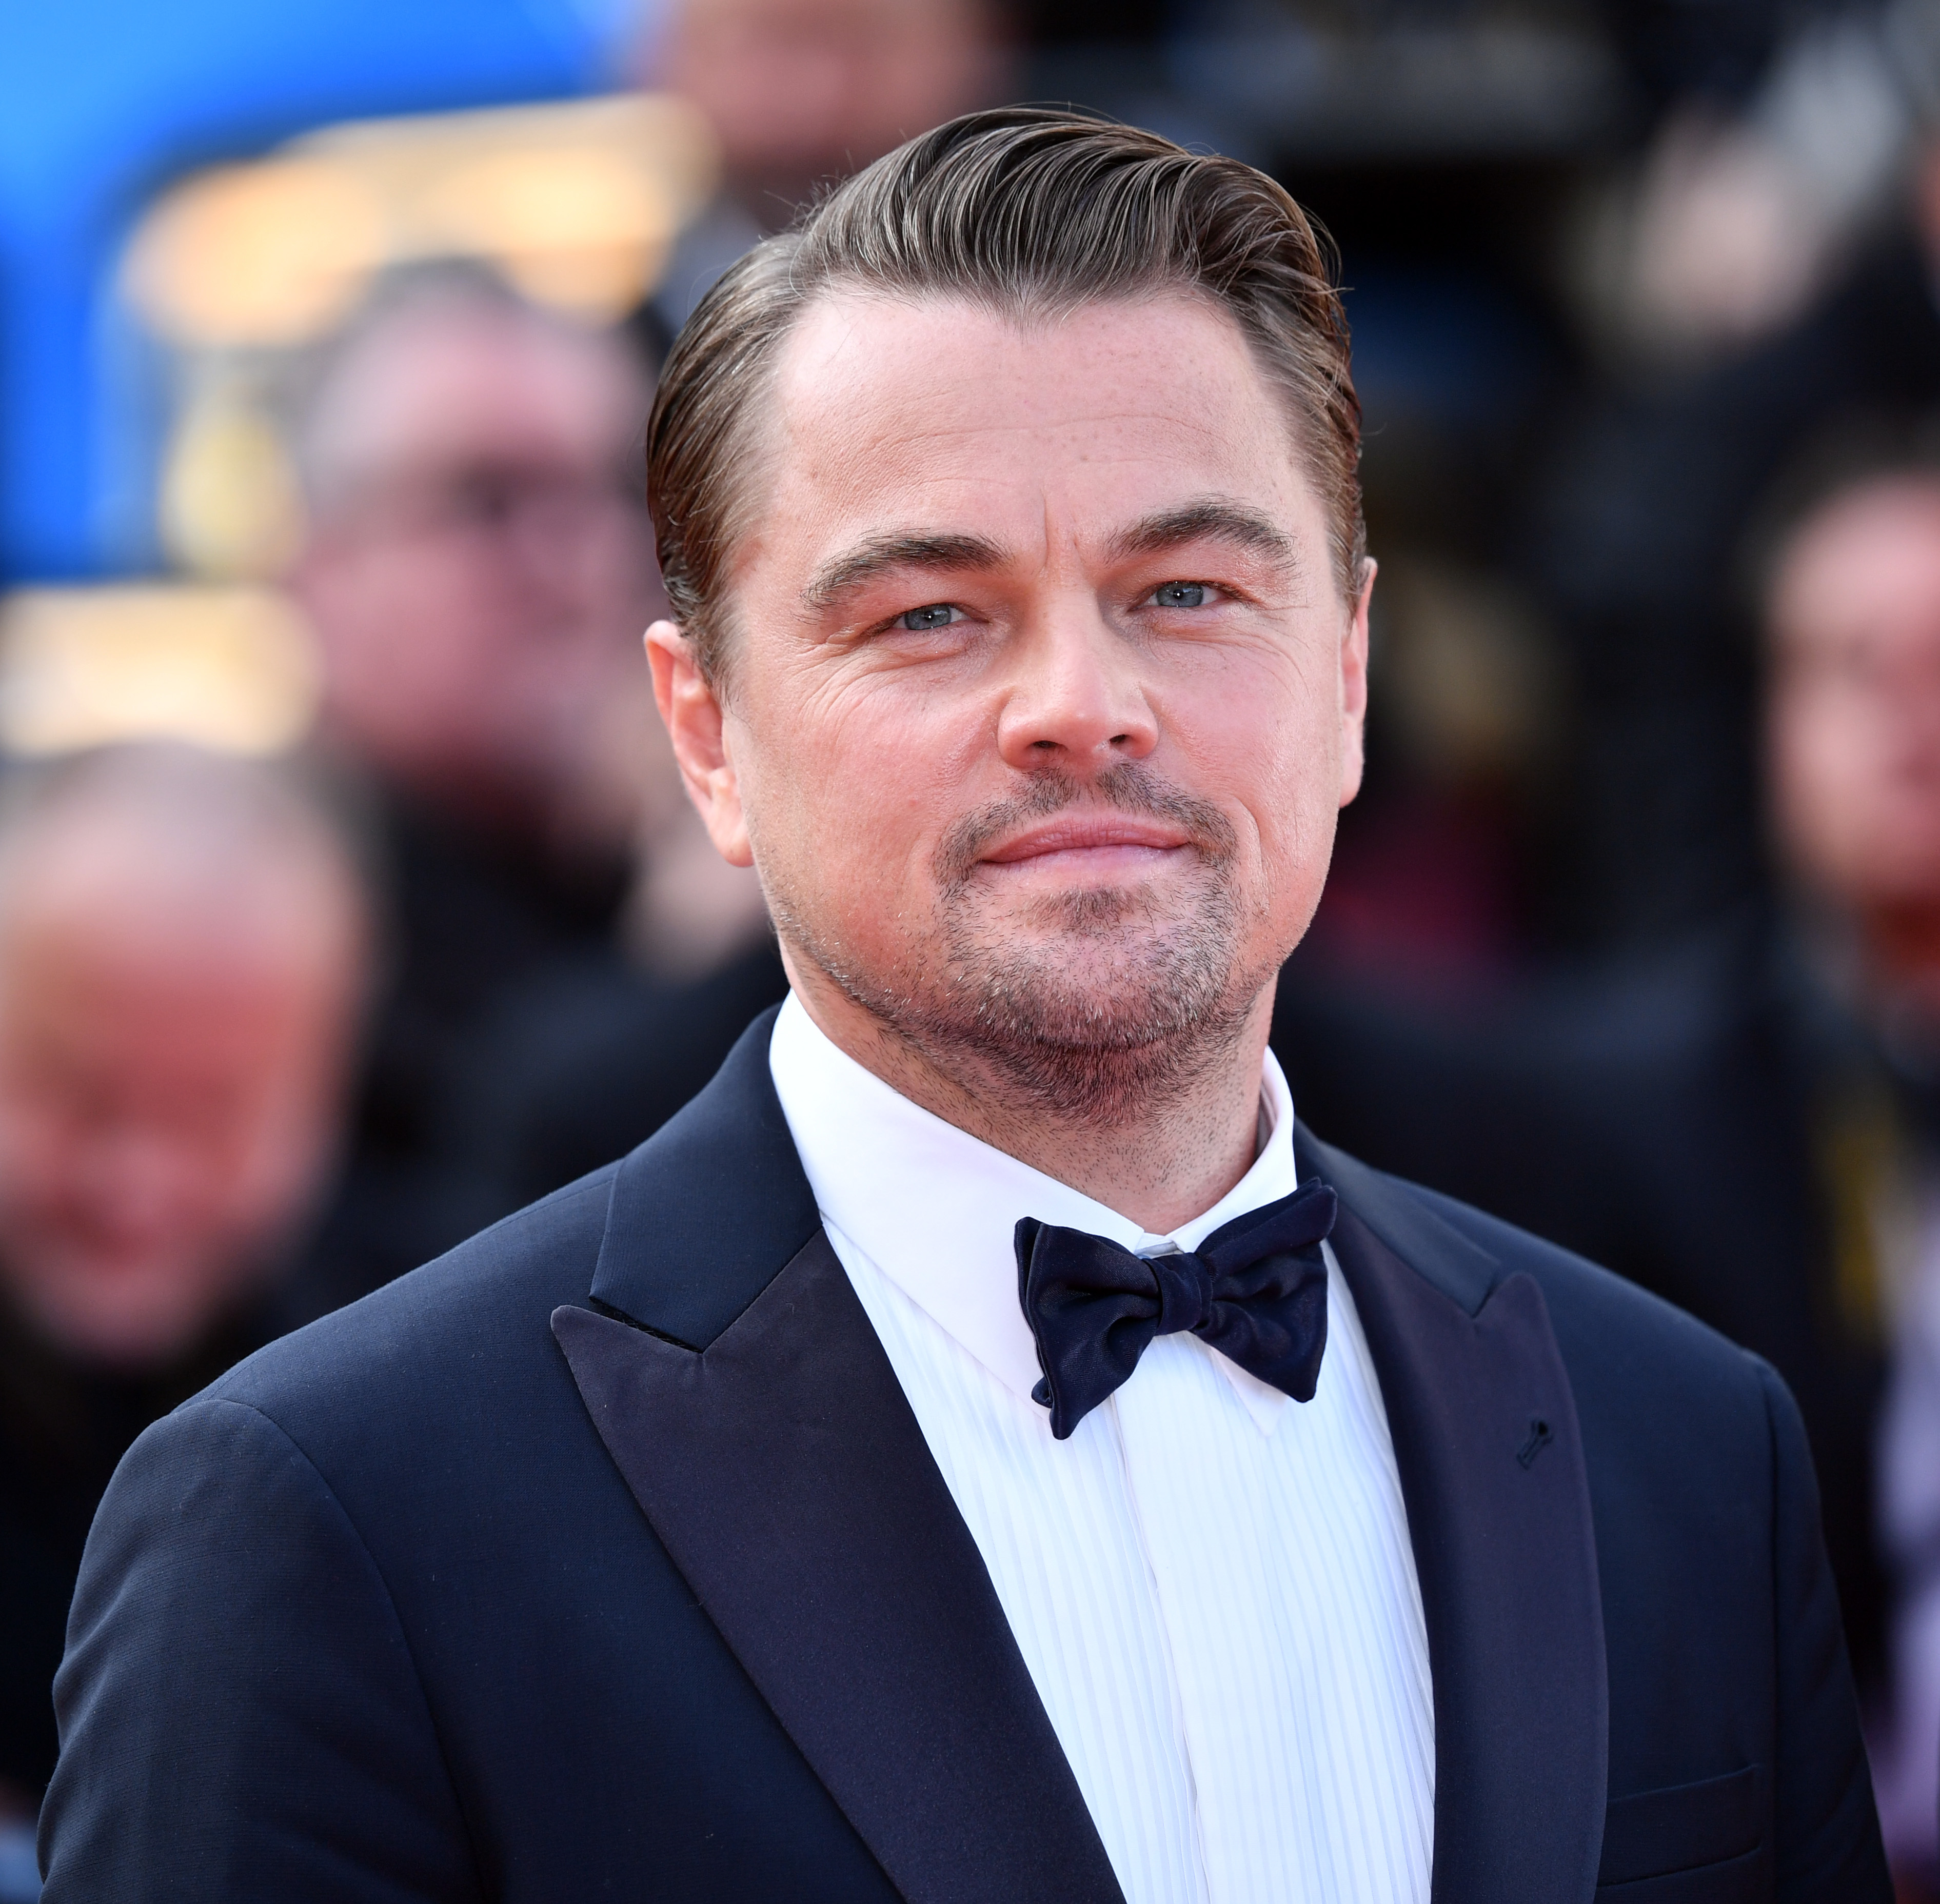 Leonardo DiCaprio and Brad Pitt attend 72nd Cannes Film Festival